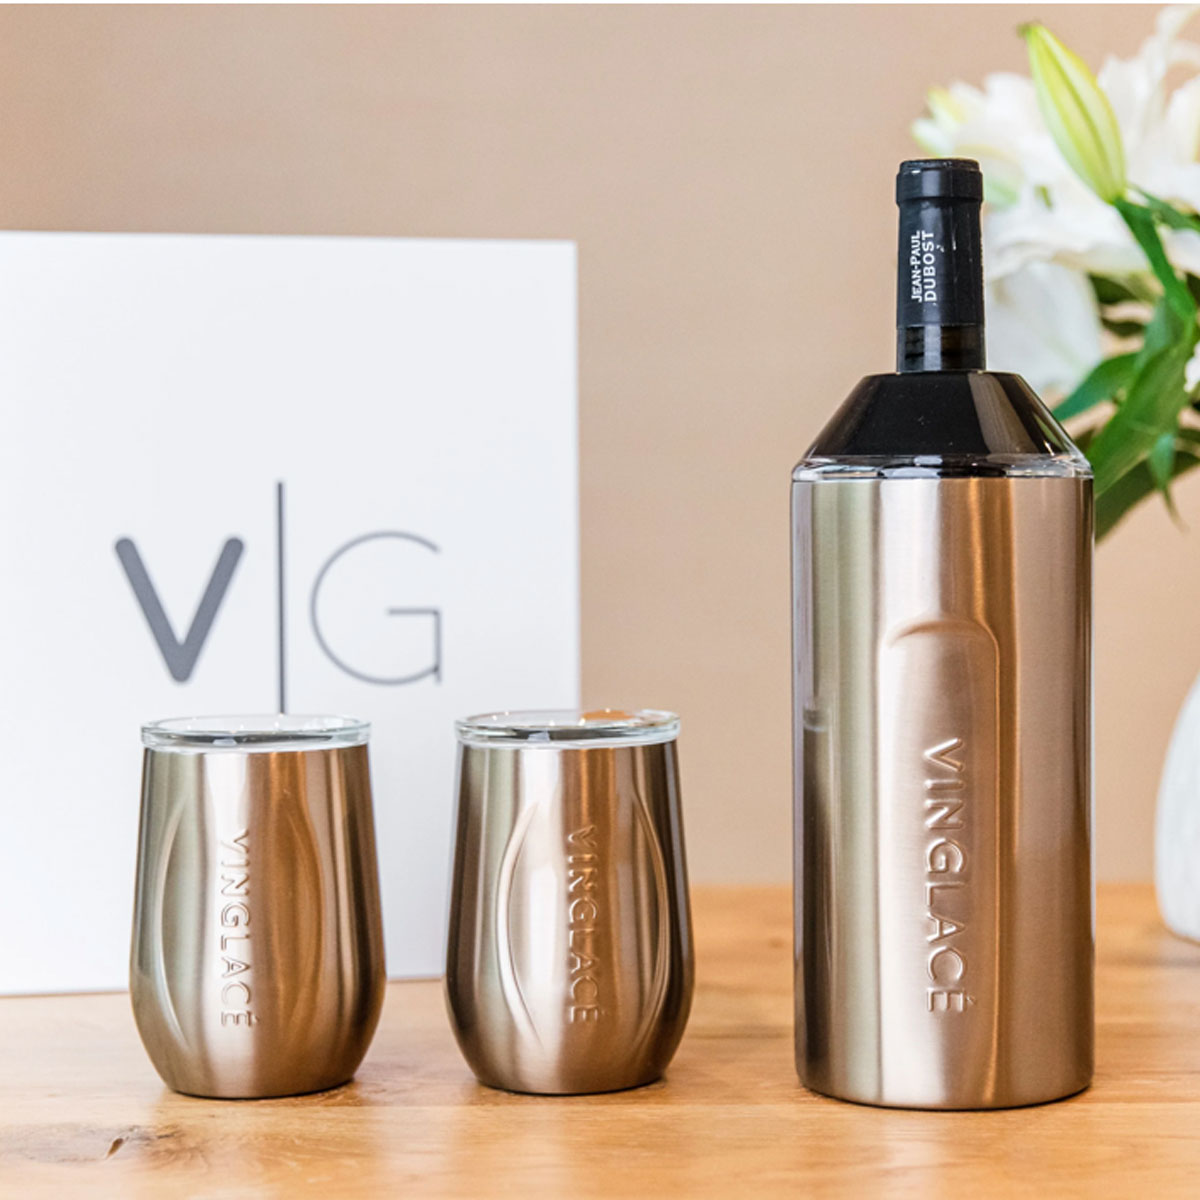 Vinglacé Wine Set - 2 Glasses & Bottle Chiller – UnMask